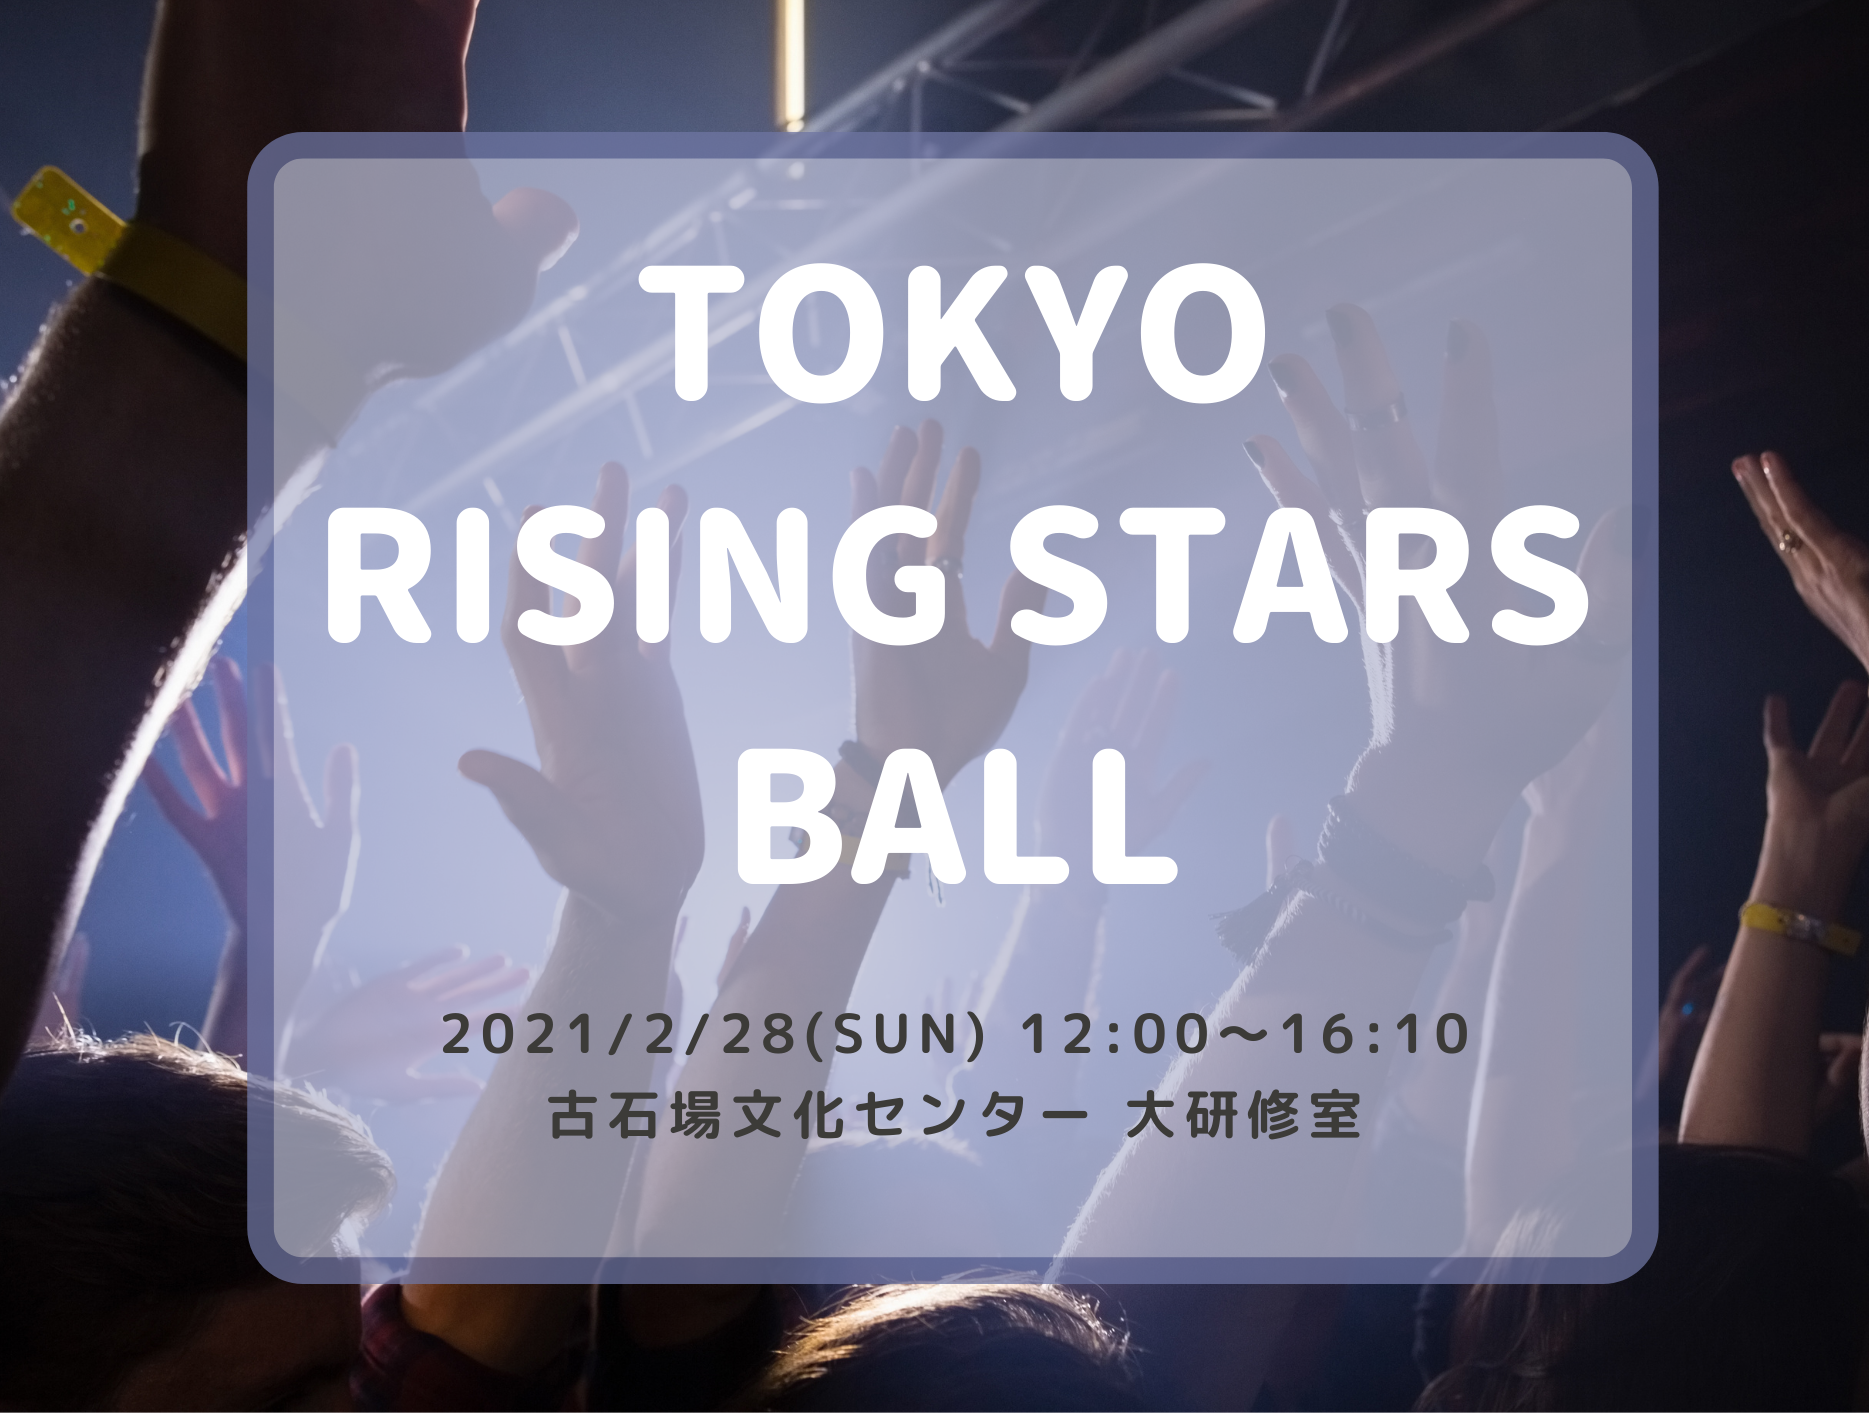 TOKYO RISING STARS BALL 開催のお知らせ